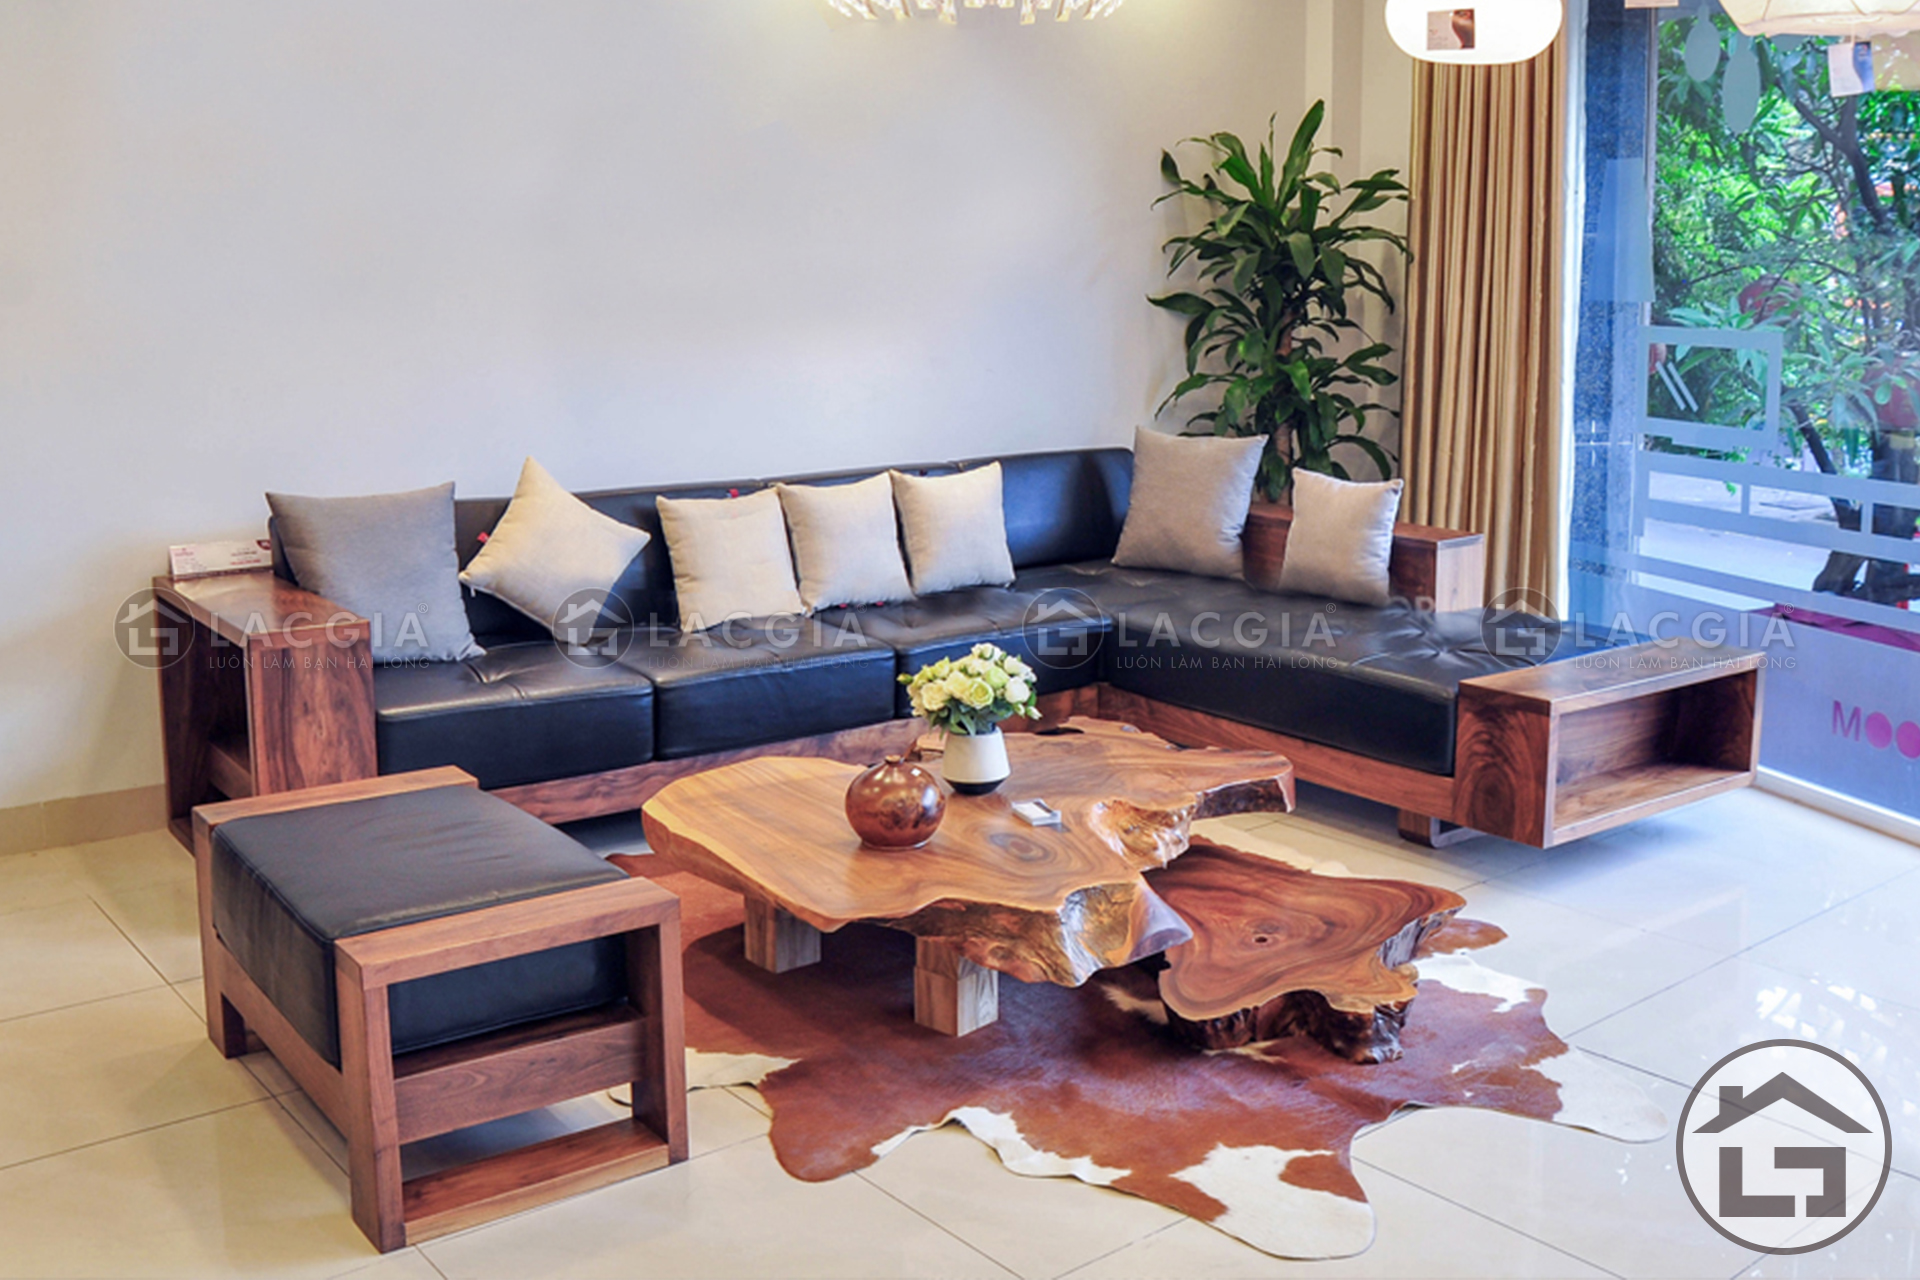 Sofa go chu L hien dai 1 - Tại sao cần phải chọn kích thước sofa gỗ cho phòng khách?